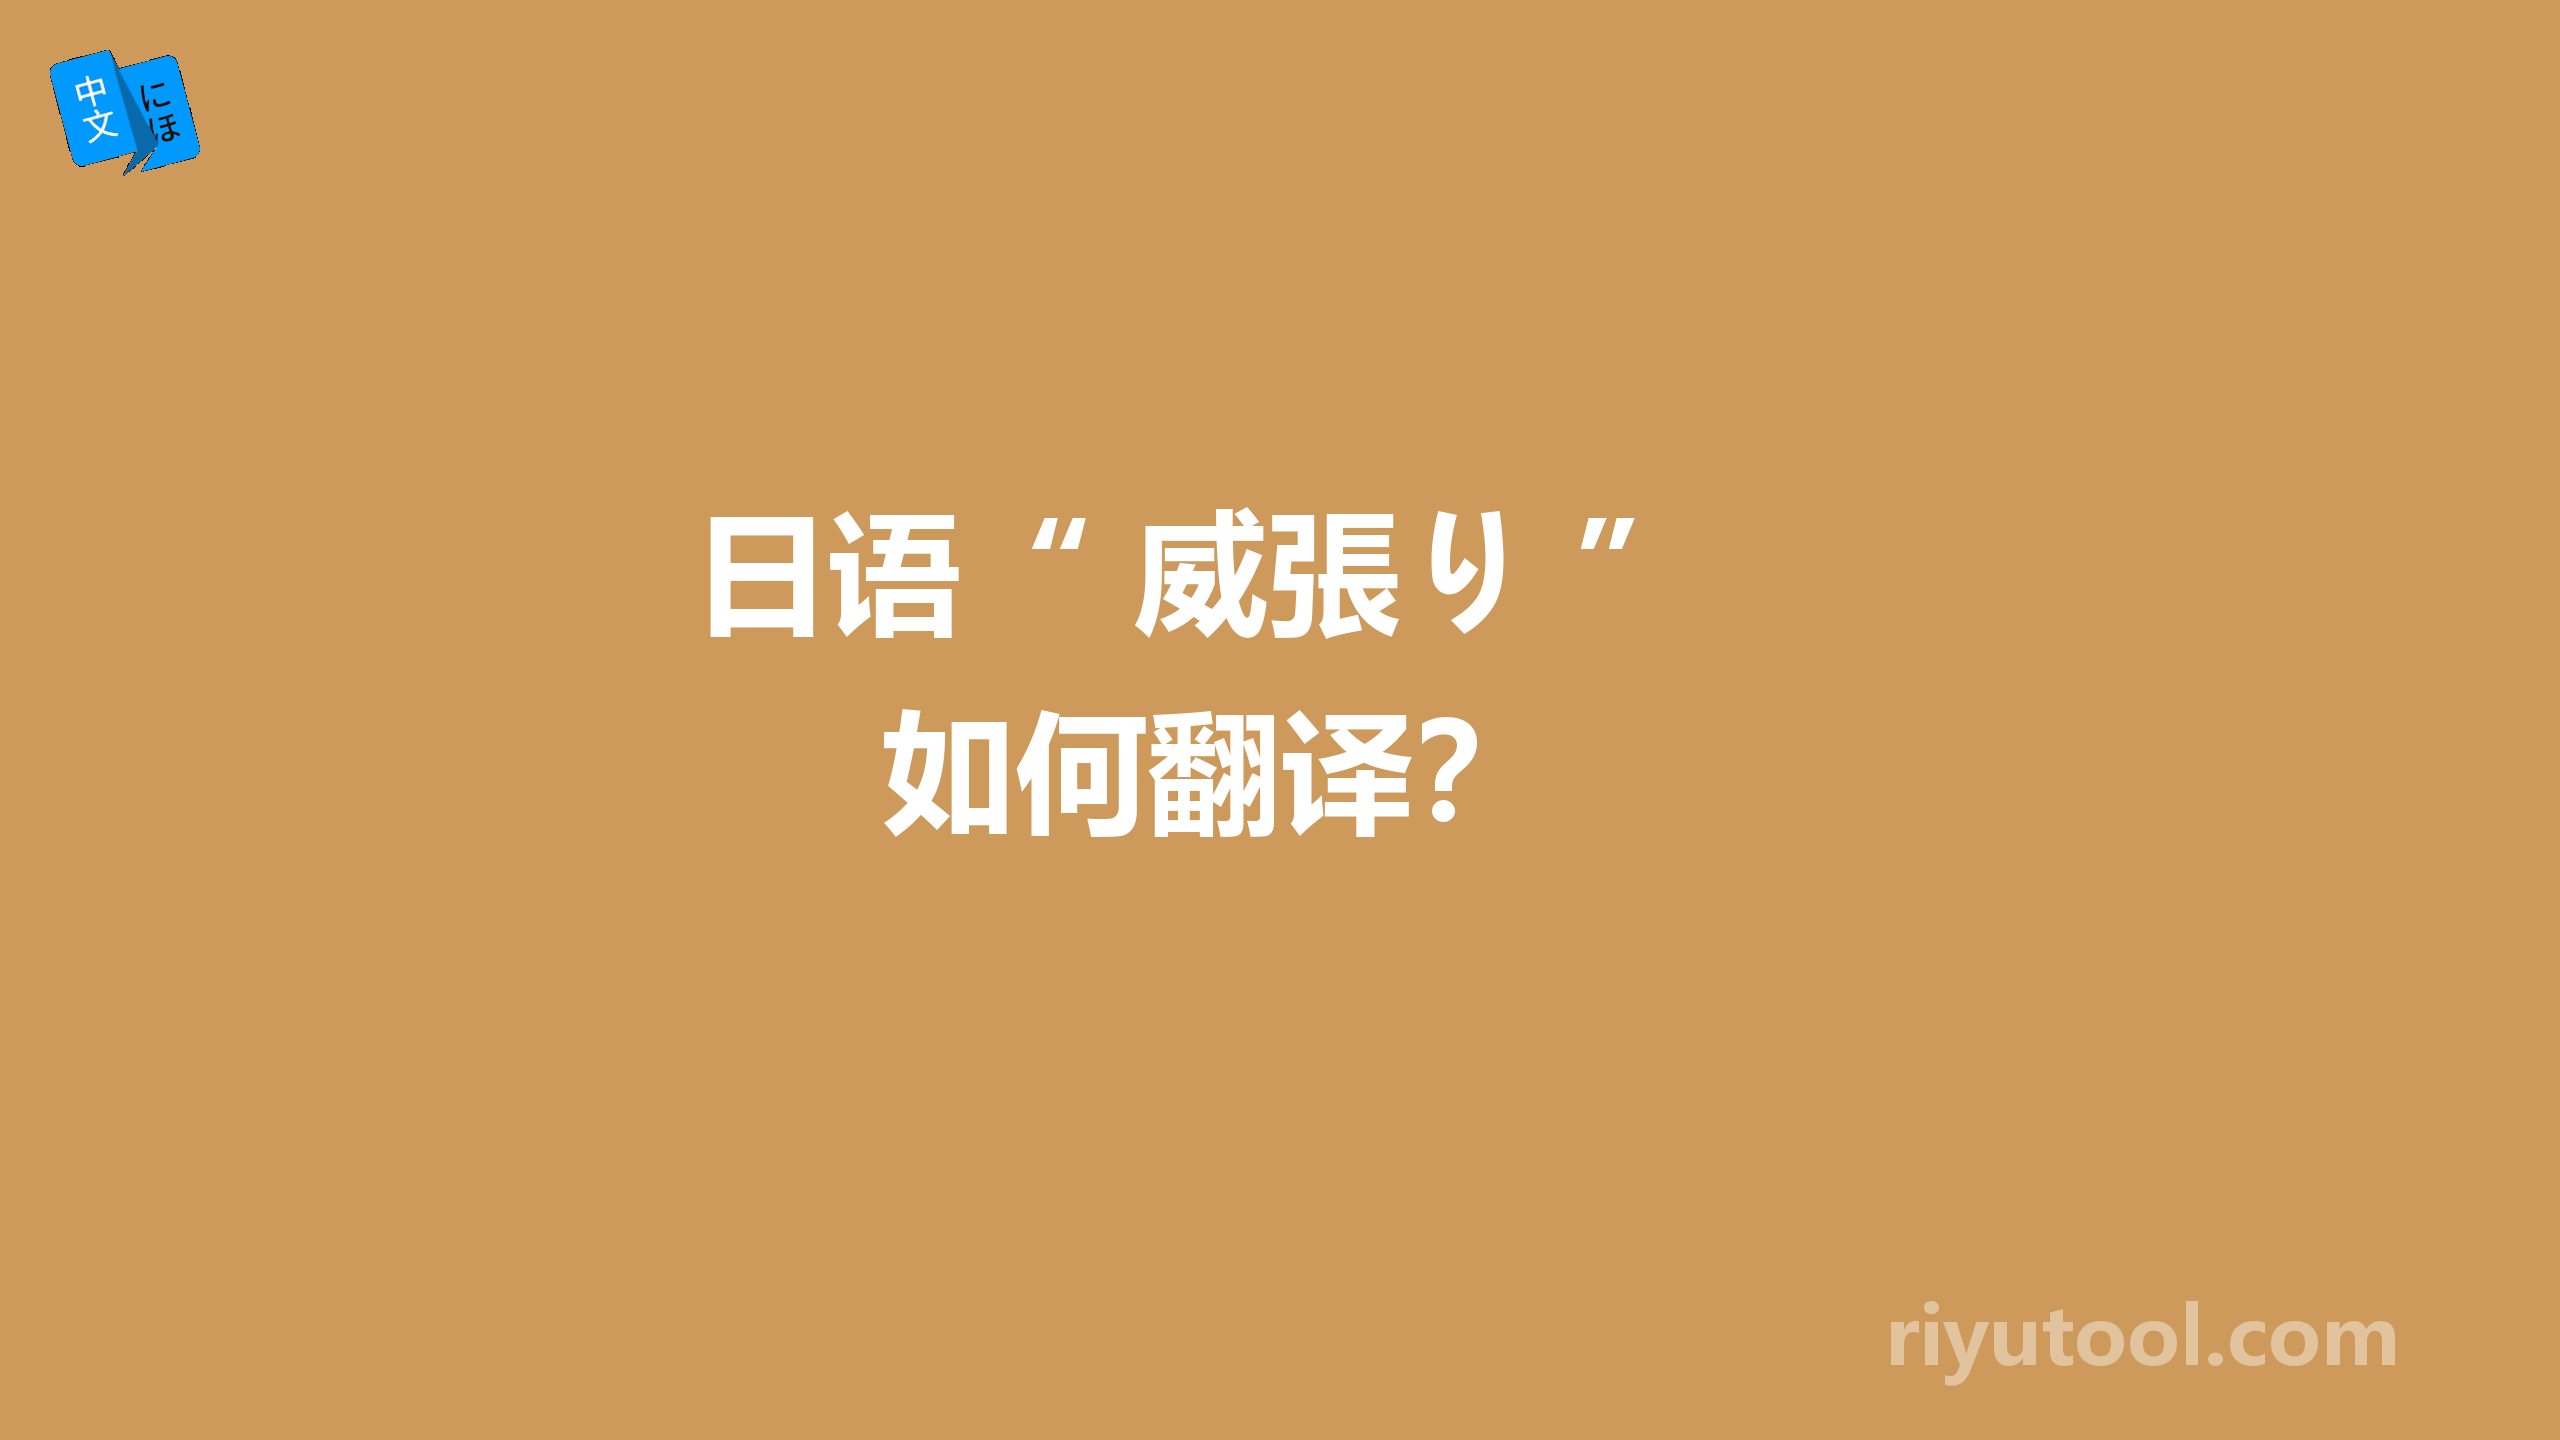  日语“ 威張り ” 如何翻译？ 